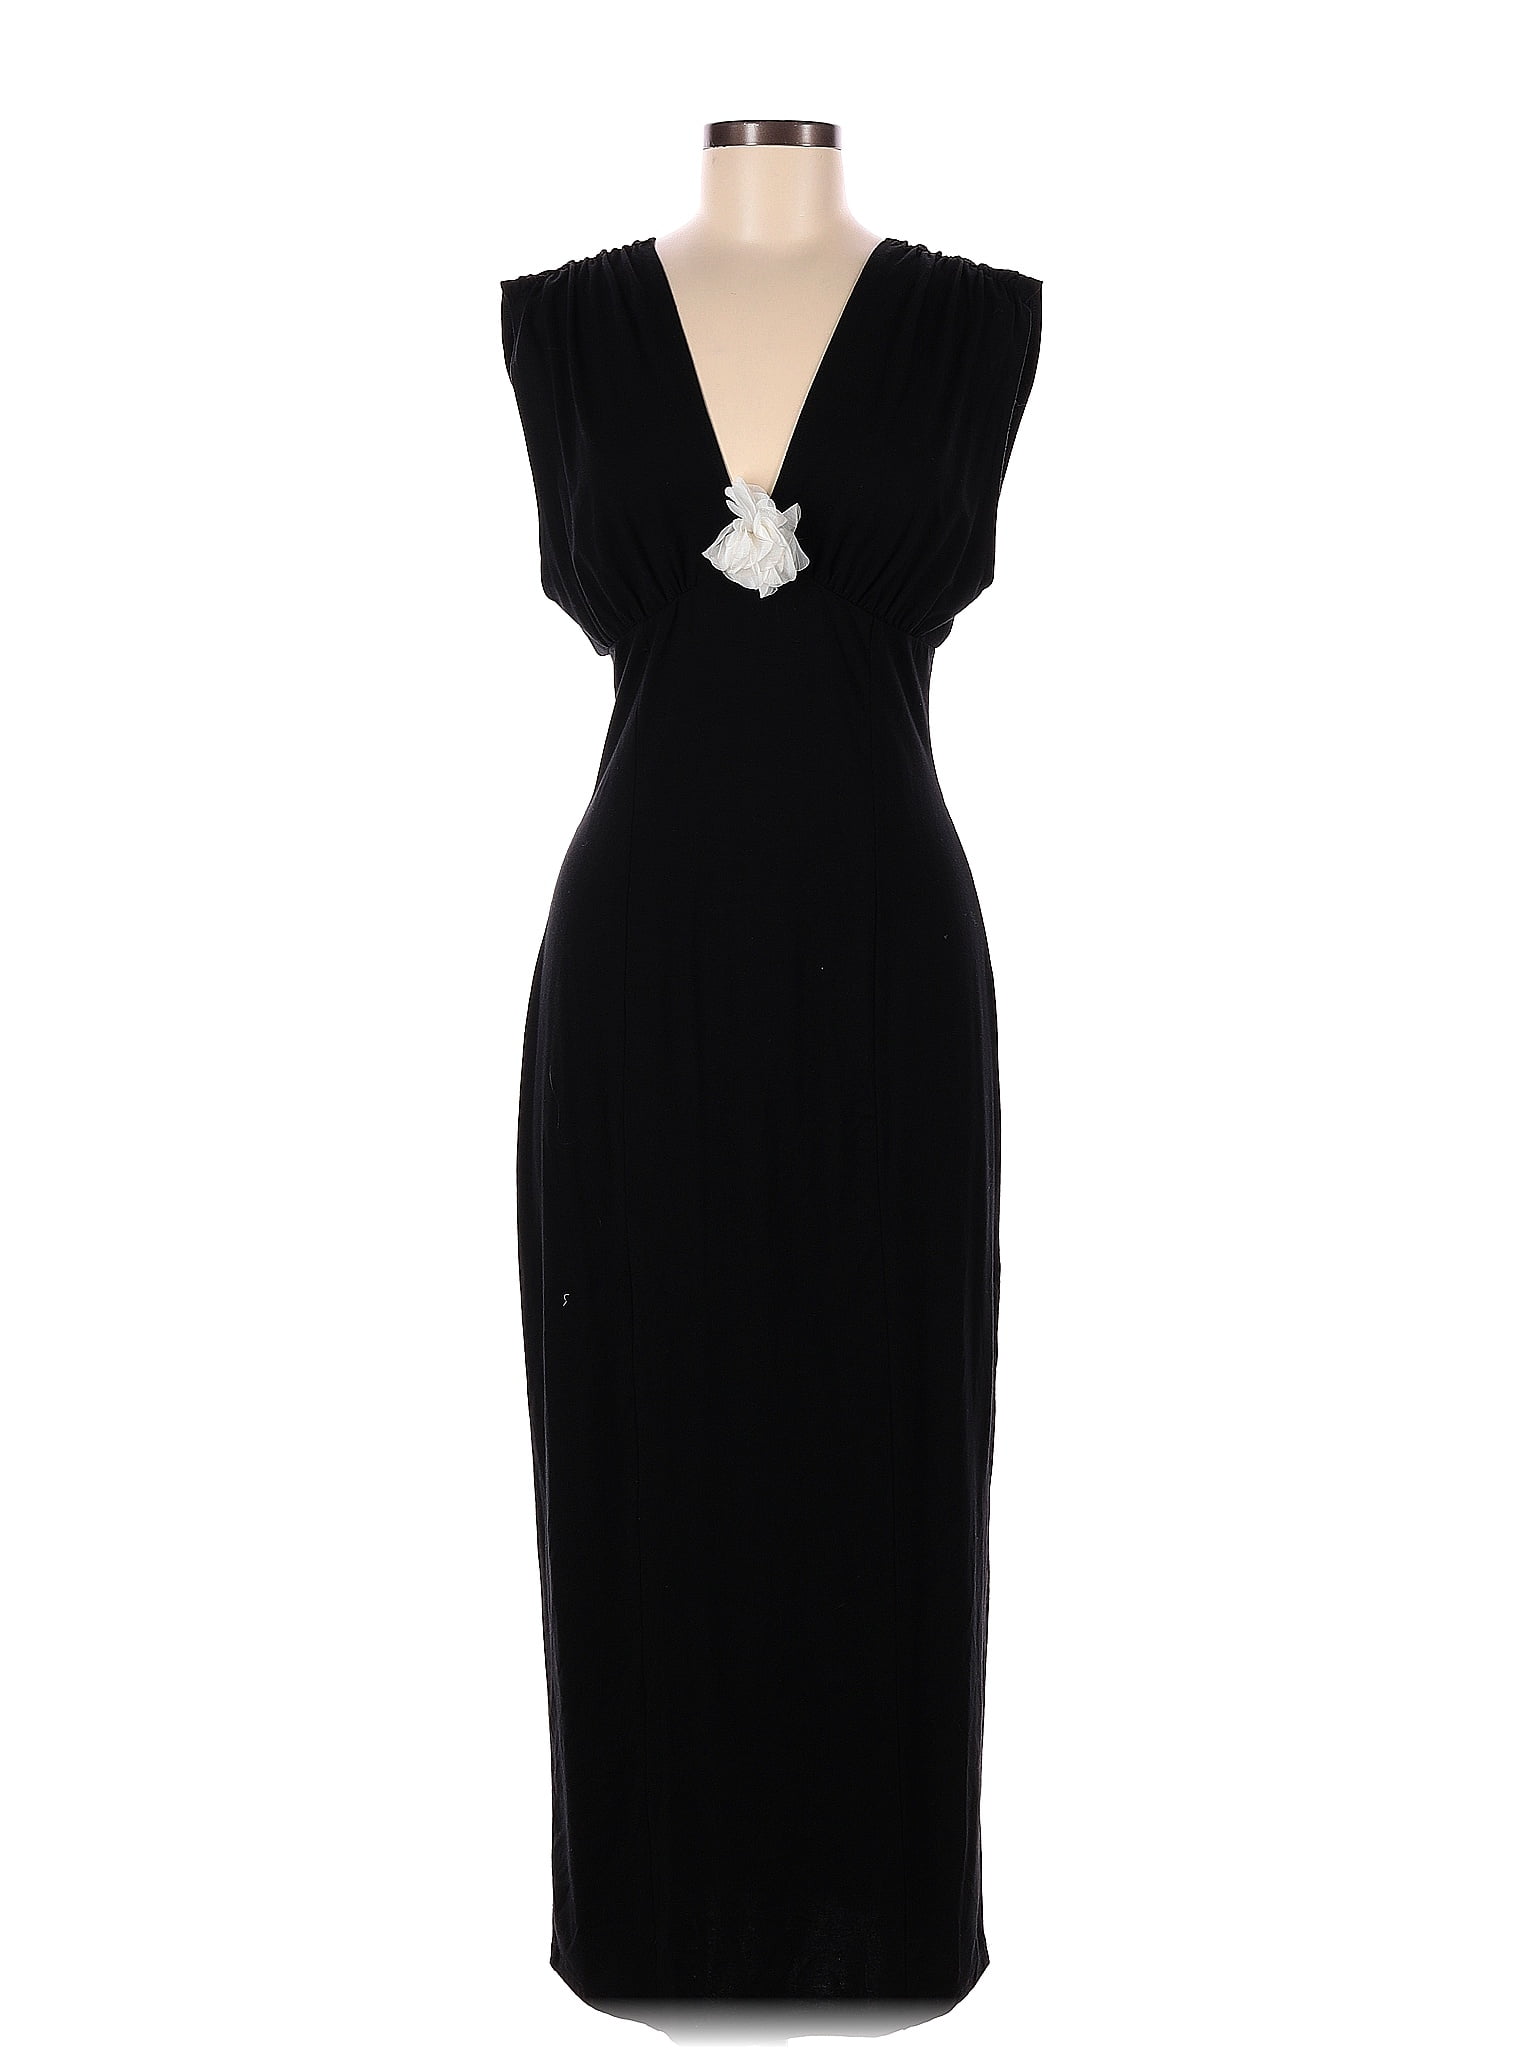 Reformation Solid Black Cocktail Dress Size M - 70% off | thredUP